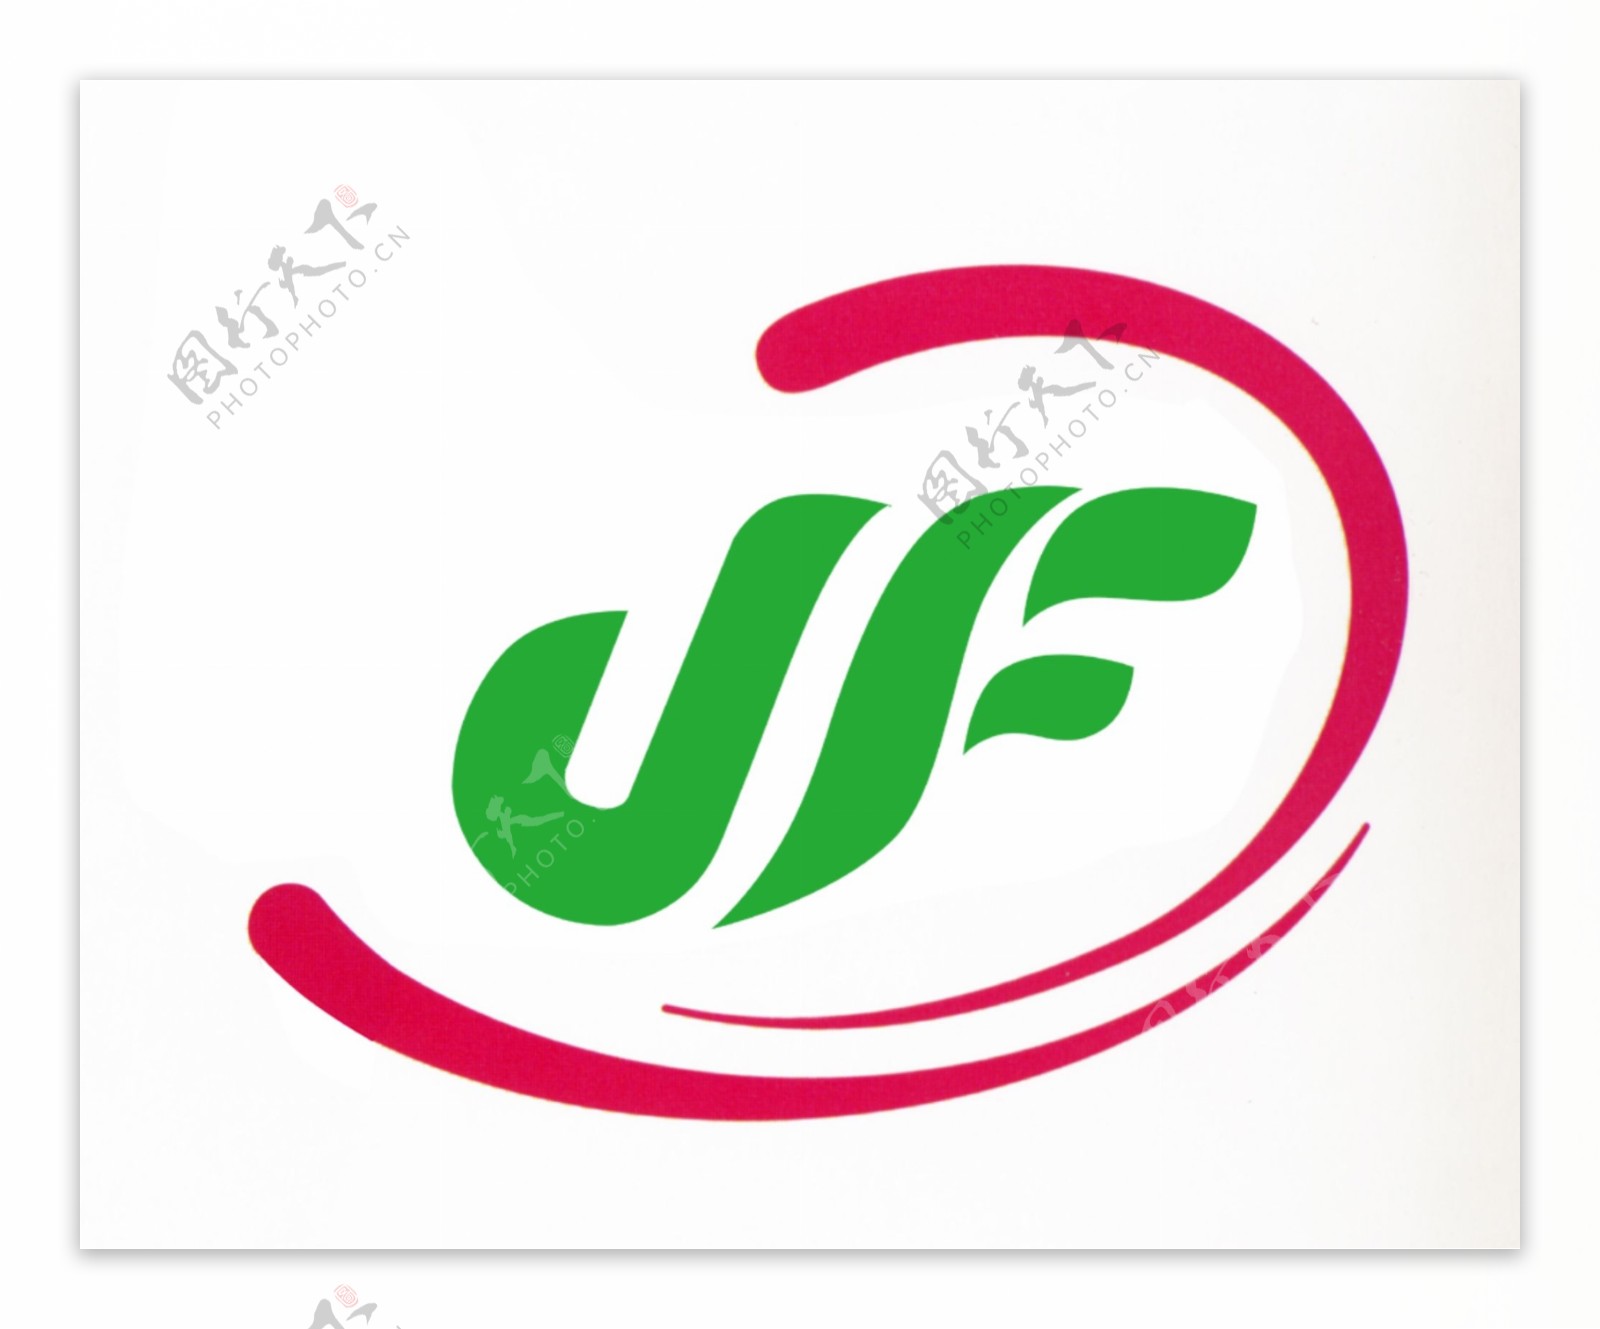 JF标志图片